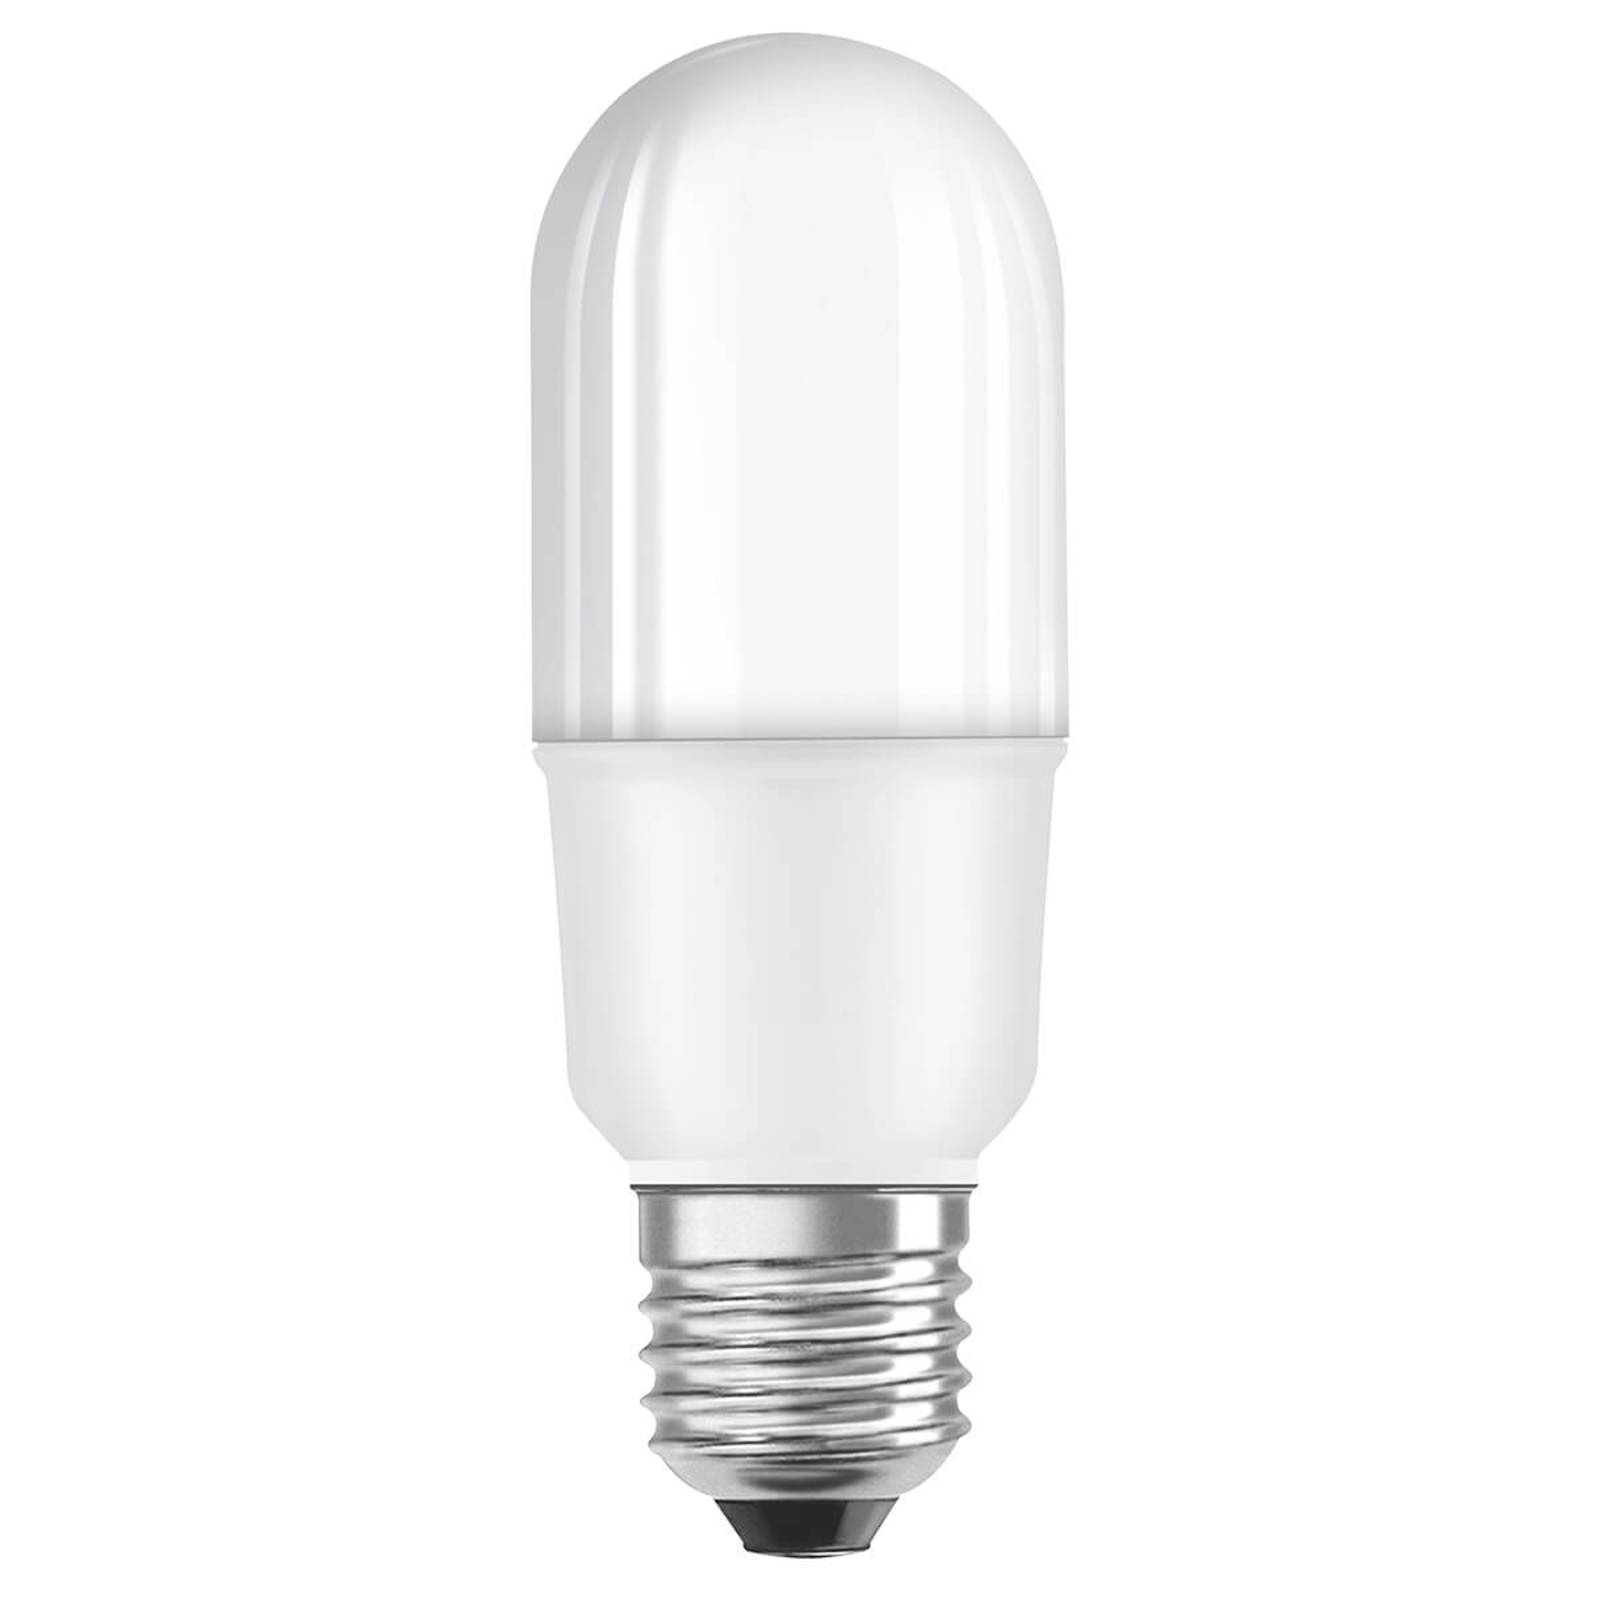 LED trubicová lampa OSRAM Star E27 8W teplá biela